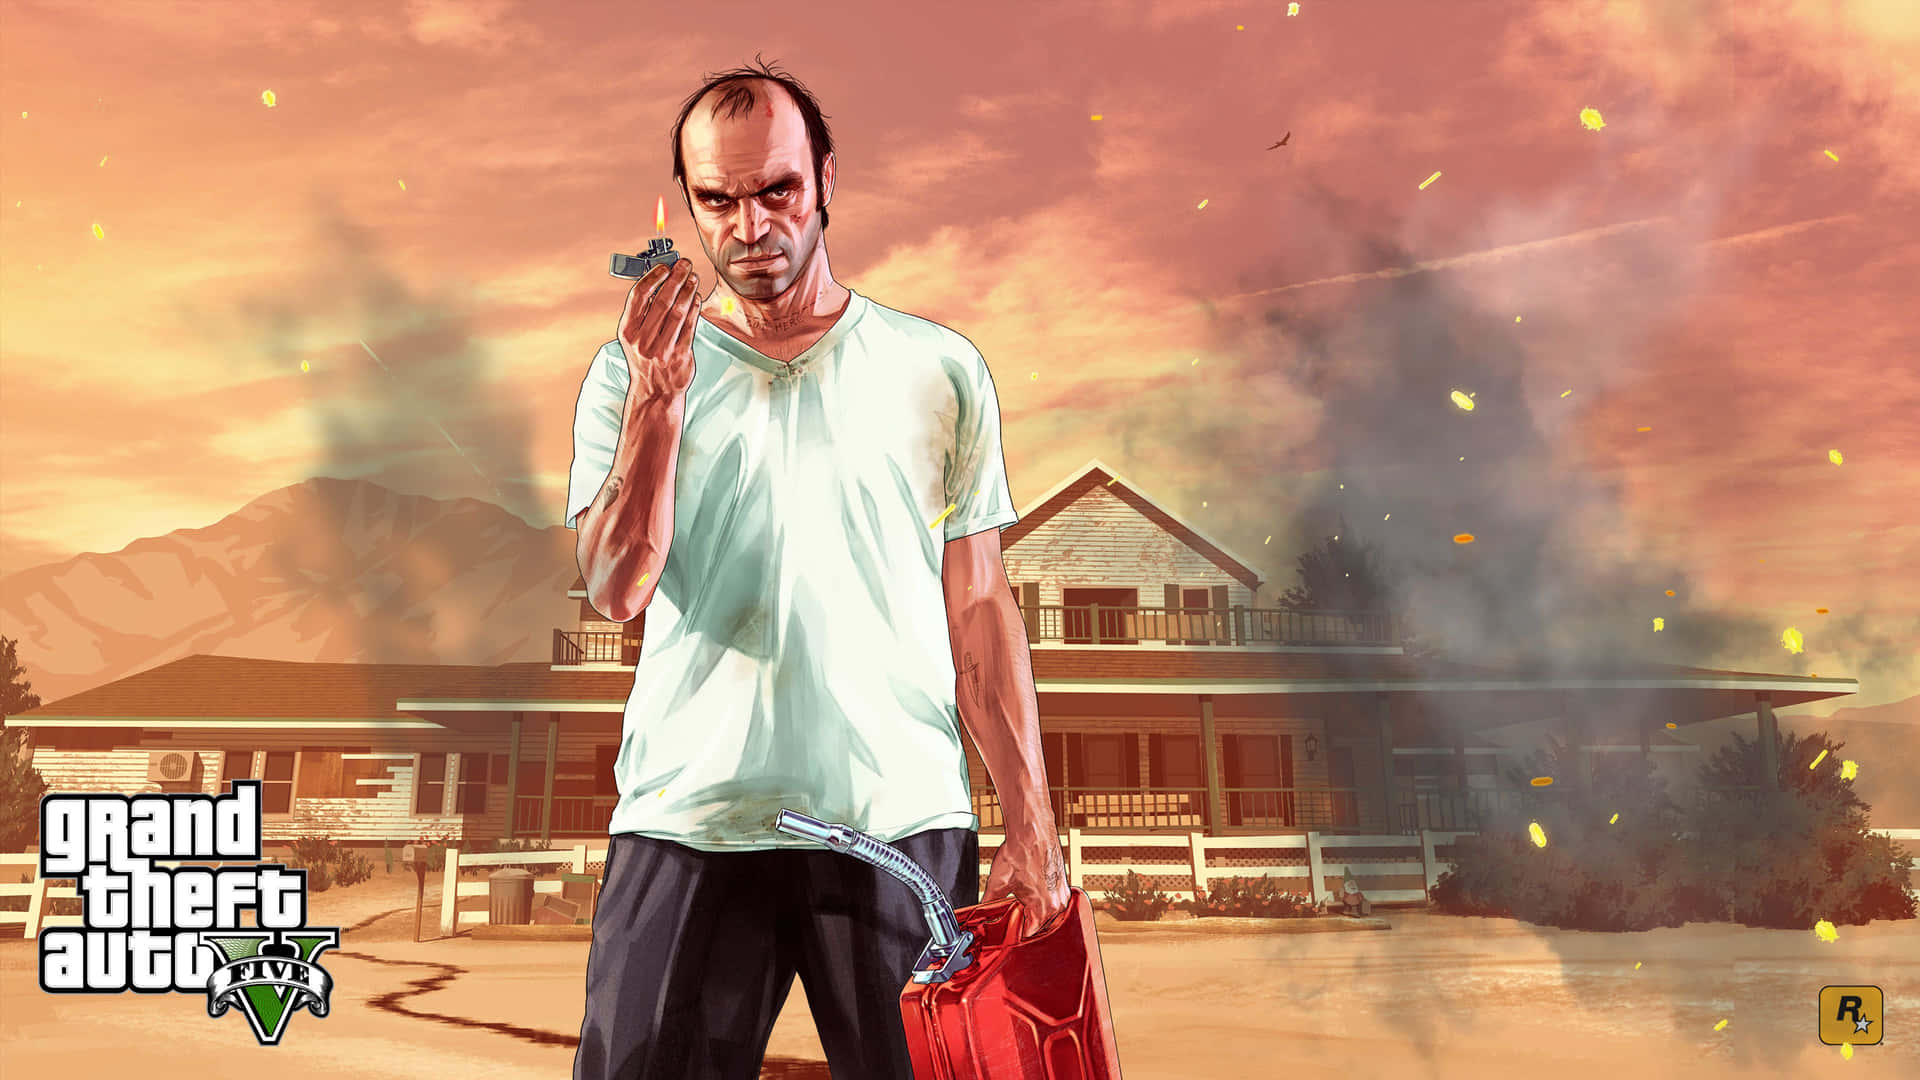 Upplevett Actionfyllt Spel I Världen Av Grand Theft Auto 5!